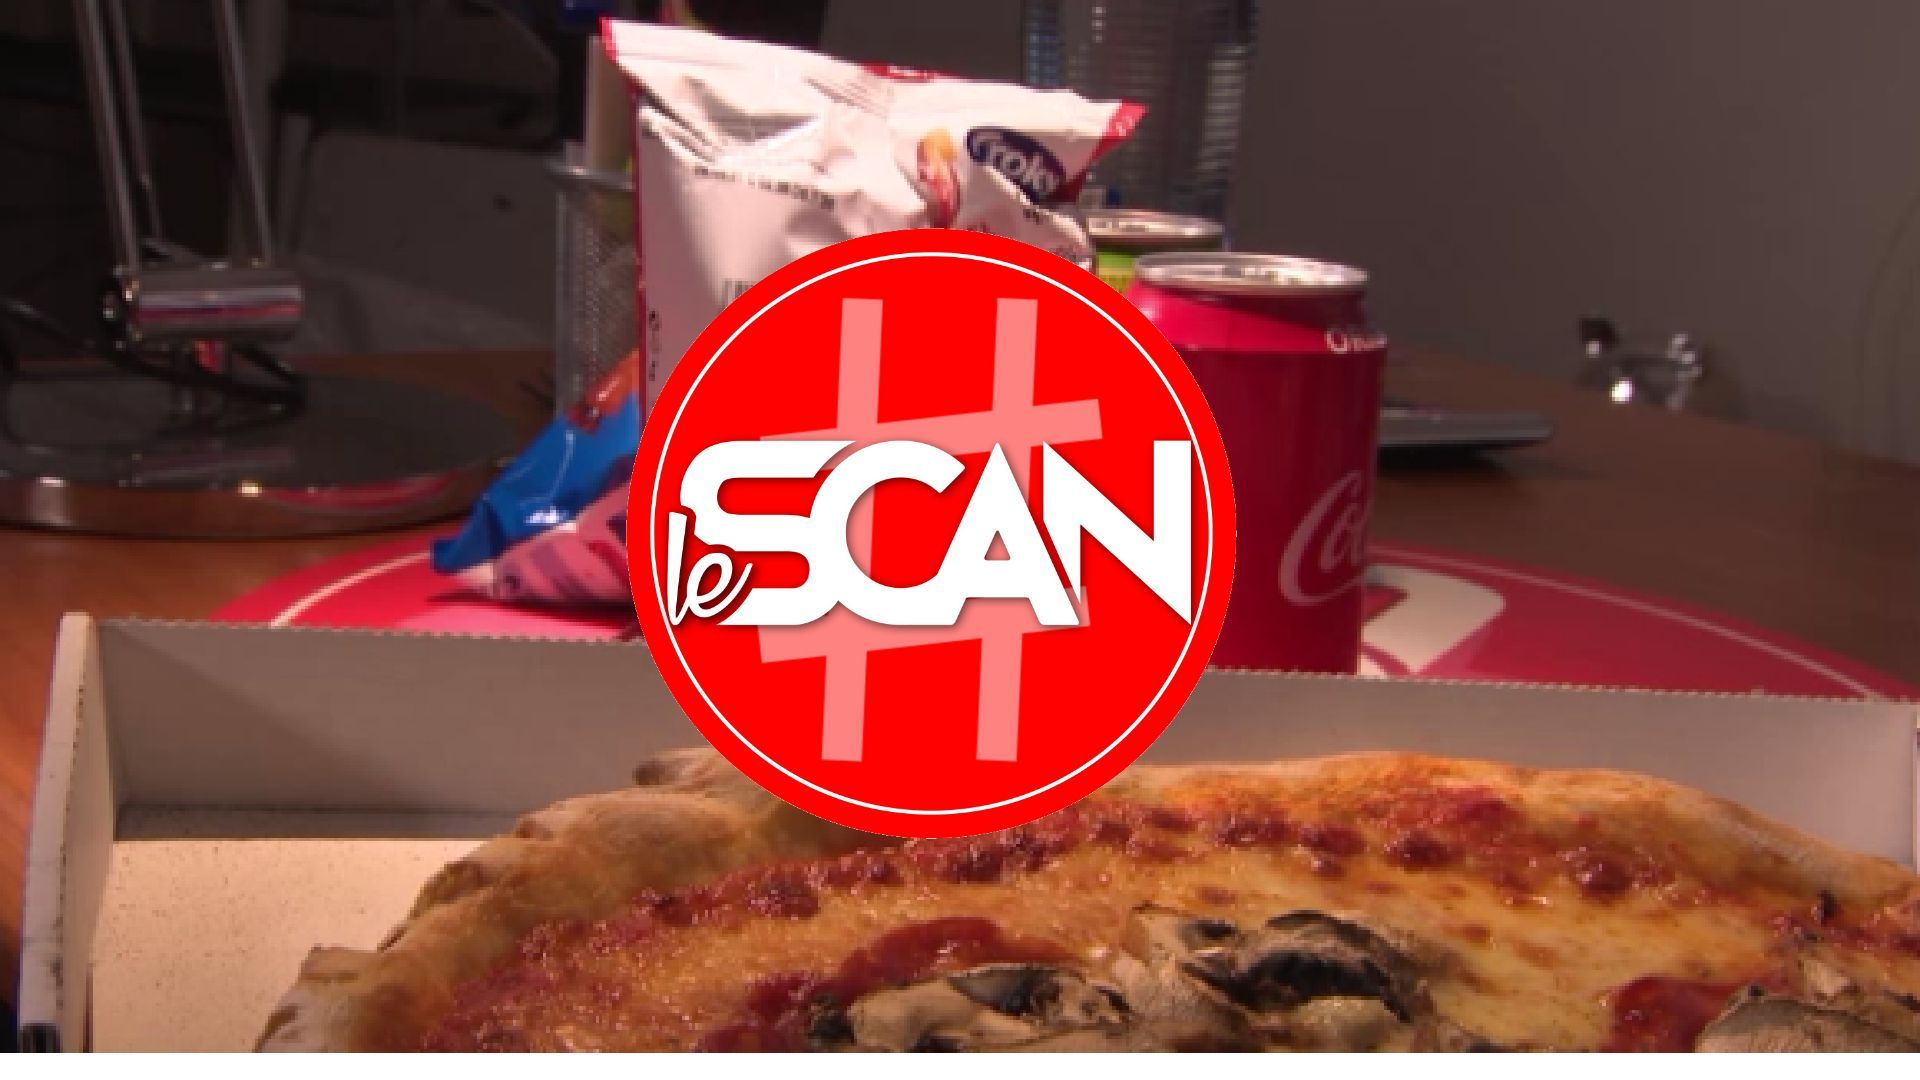 Le Scan : les emballages alimentaires sont-ils toxiques ?